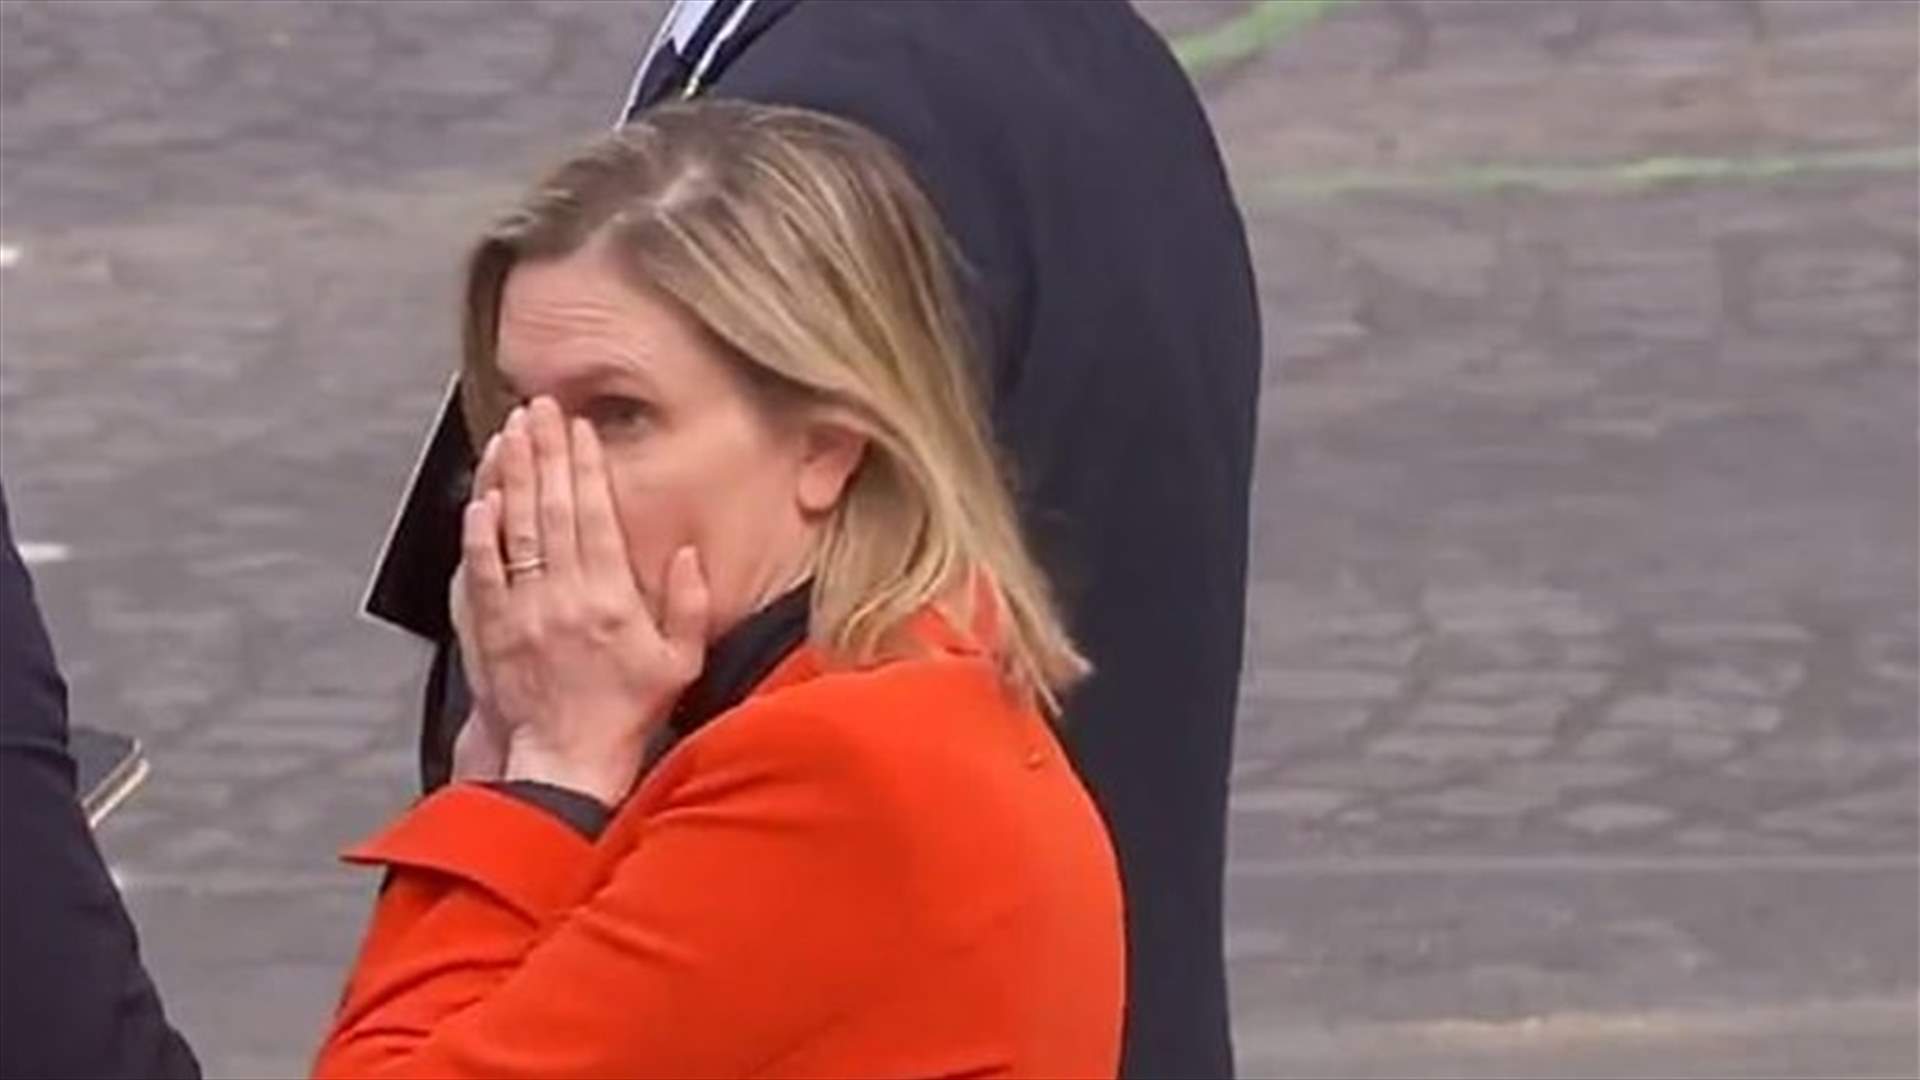 وزيرة فرنسية تتعرّض لموقف حرج بسبب الكمامة... والكاميرات ترصد ردّ فعلها الطريف (فيديو)